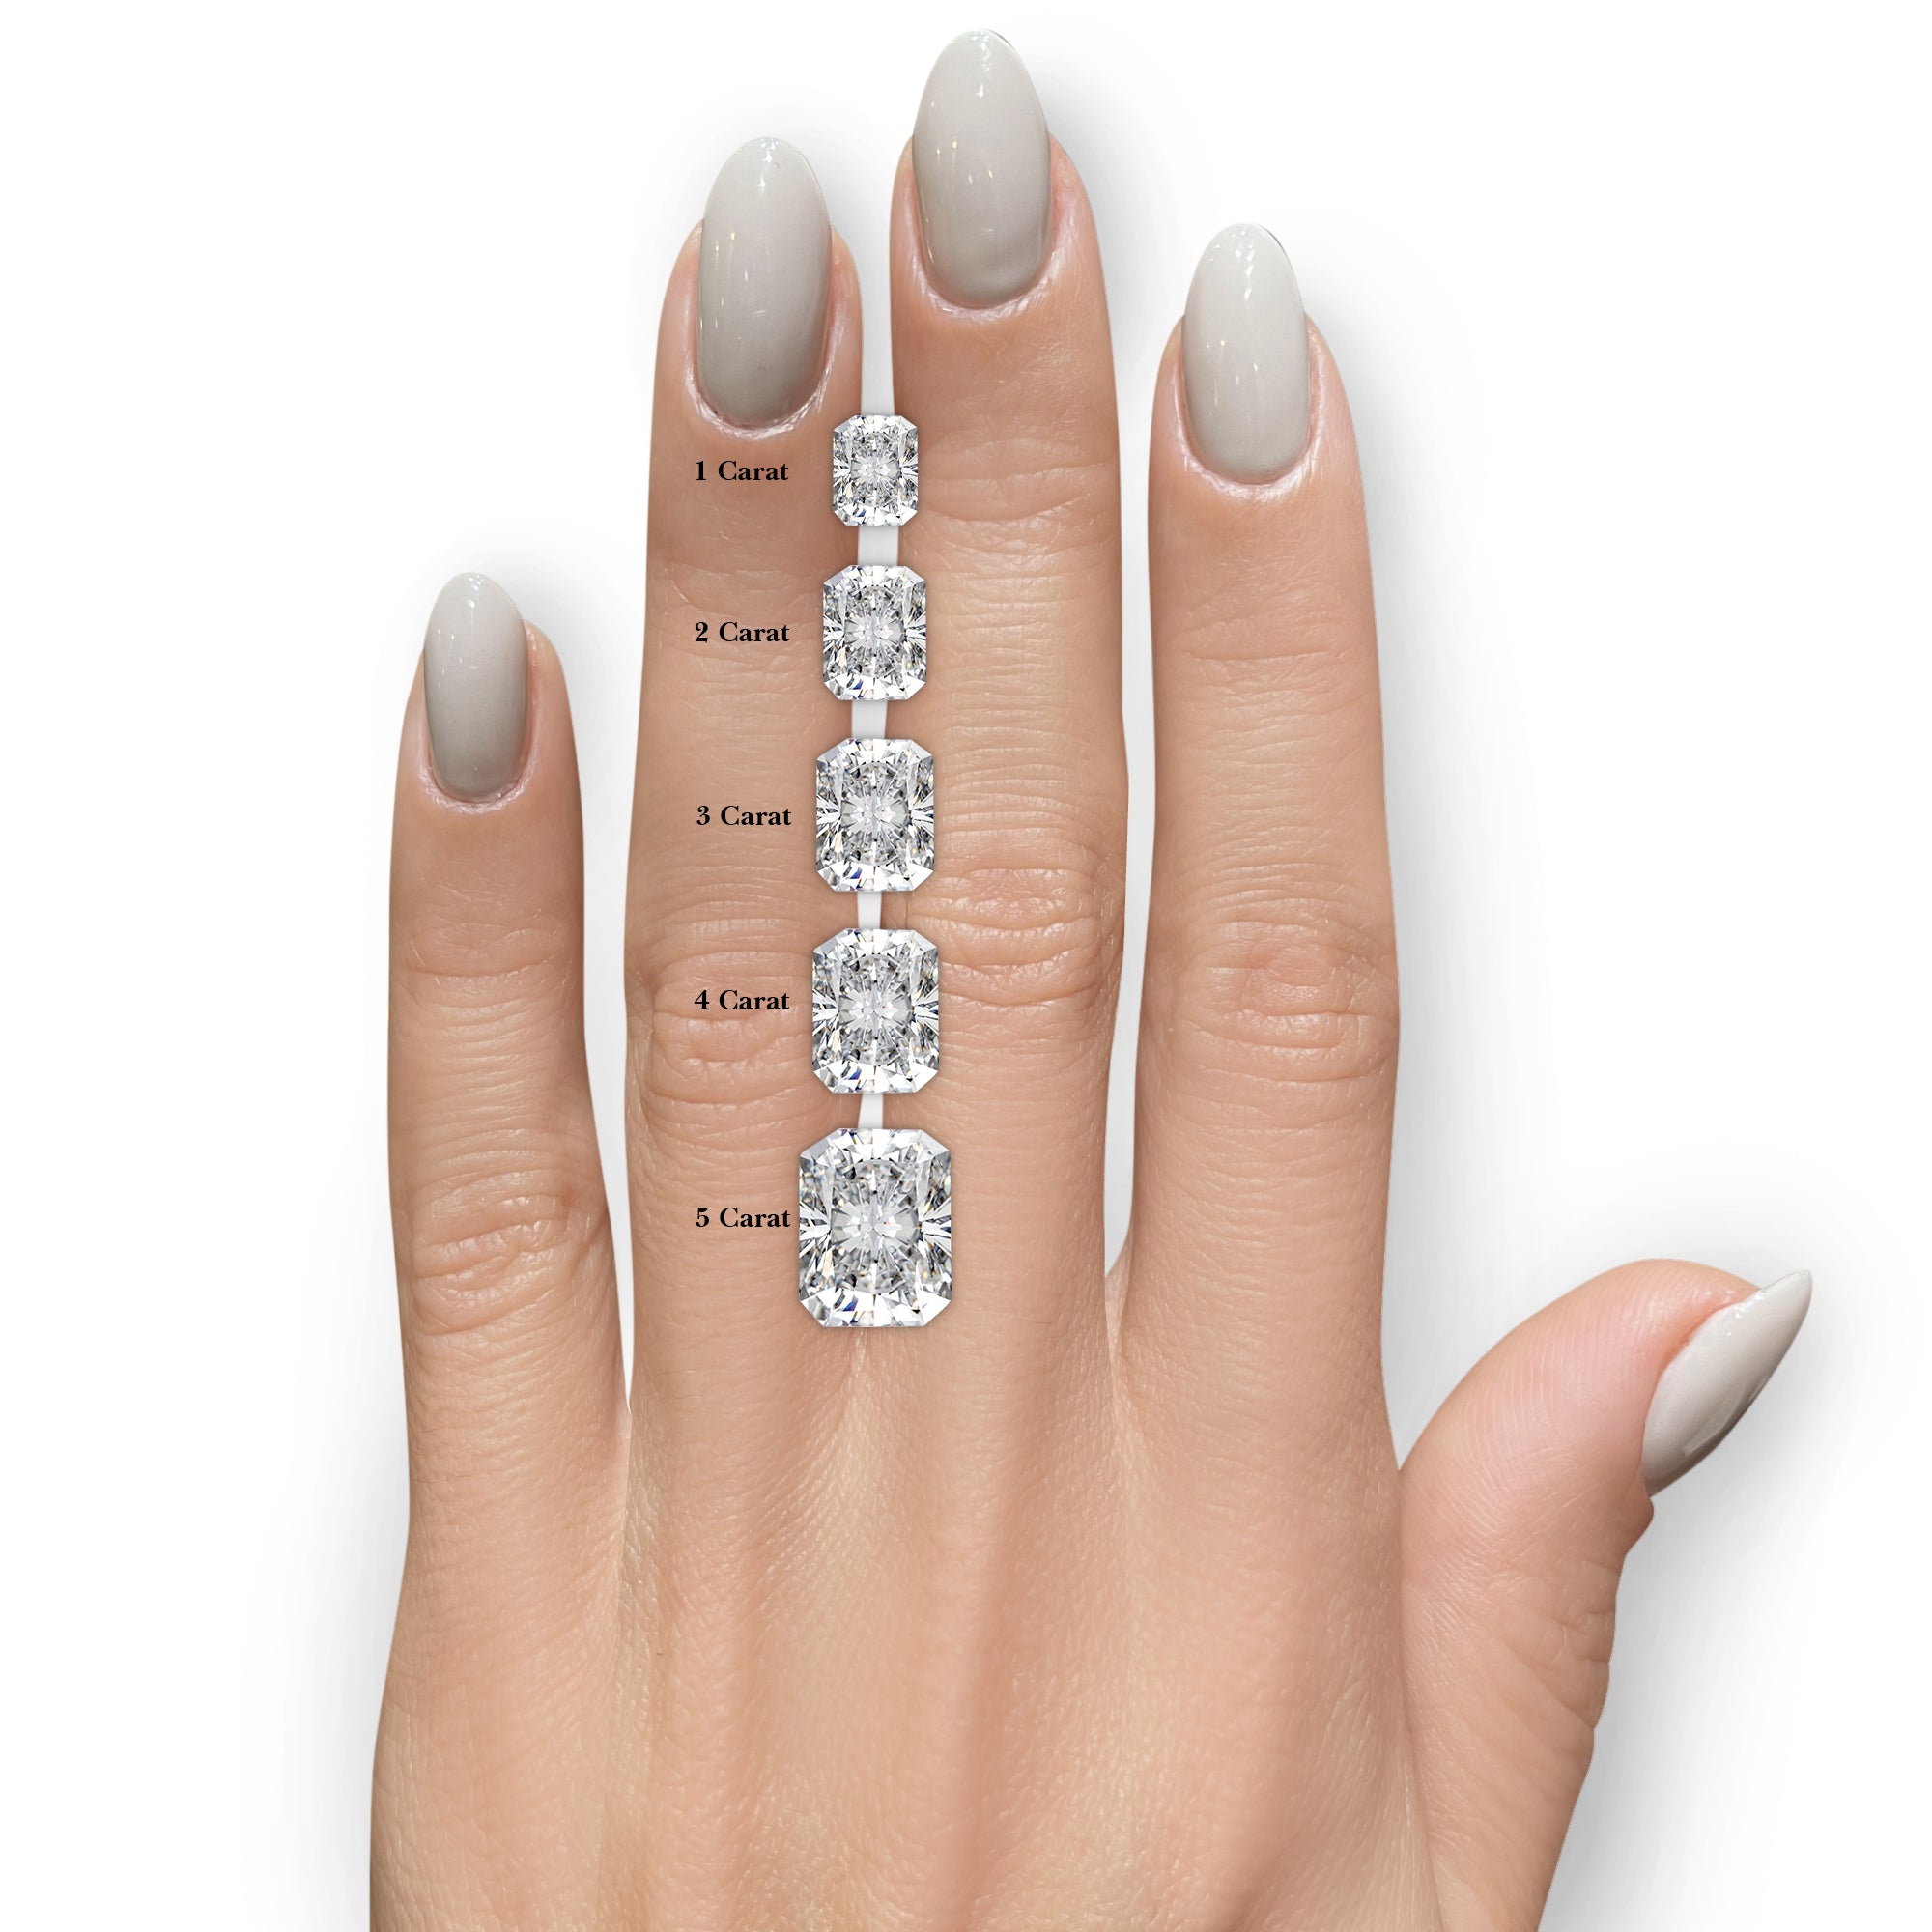 Luna Diamond Engagement Ring   (2.5 Carat) -14K Rose Gold